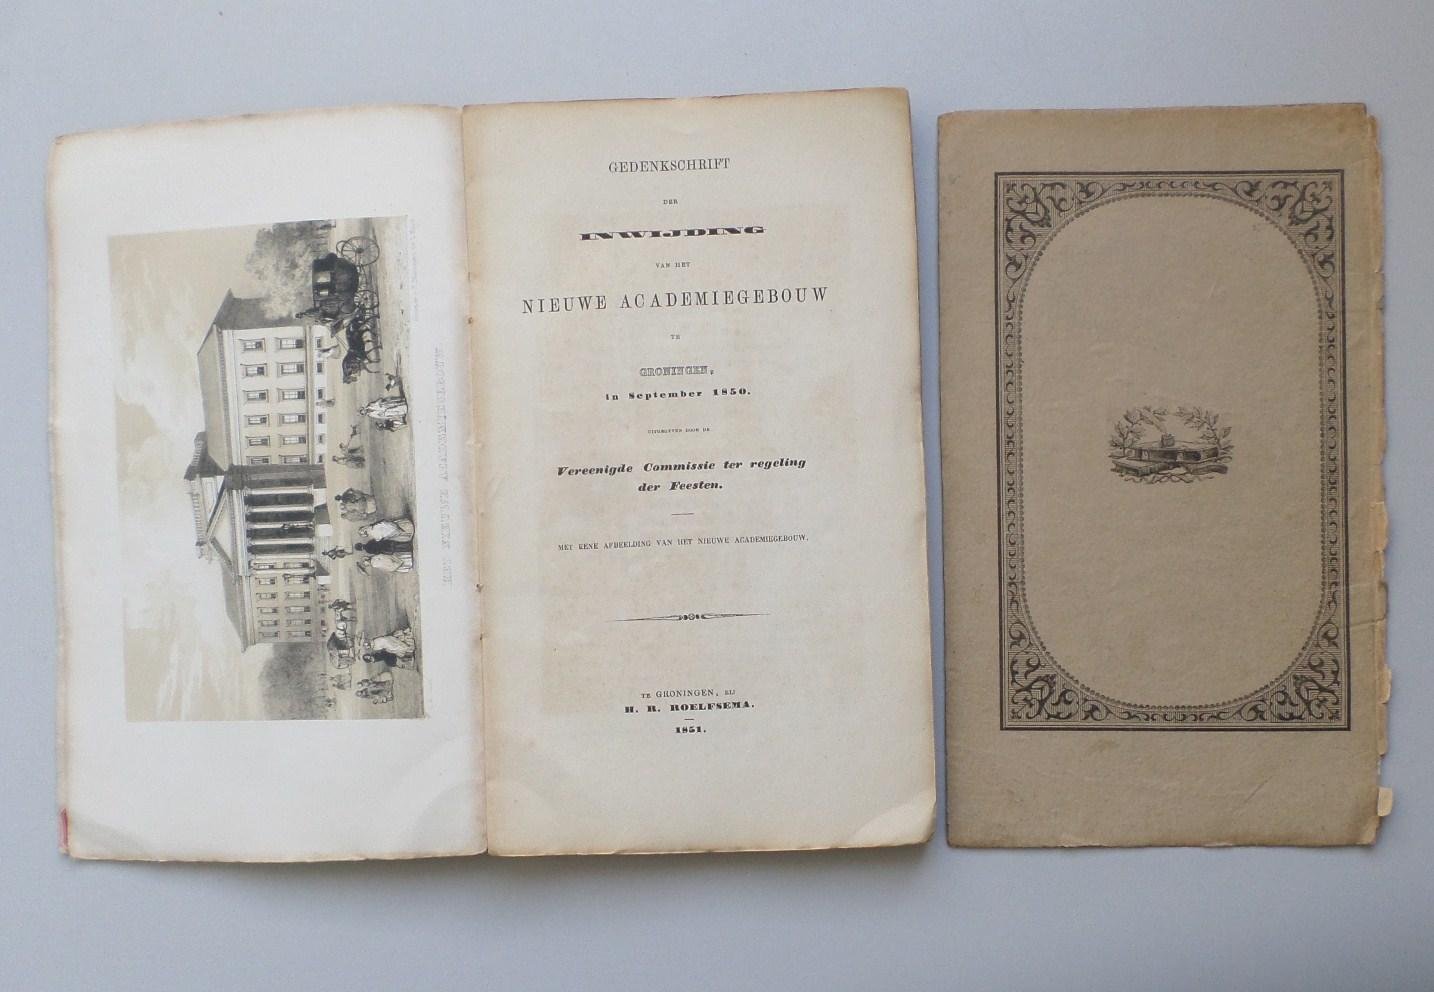 Diest Lorgion, E. J. (inleiding) - Gedenkschrift der inwijding van het nieuwe academiegebouw te Groningen in September 1850